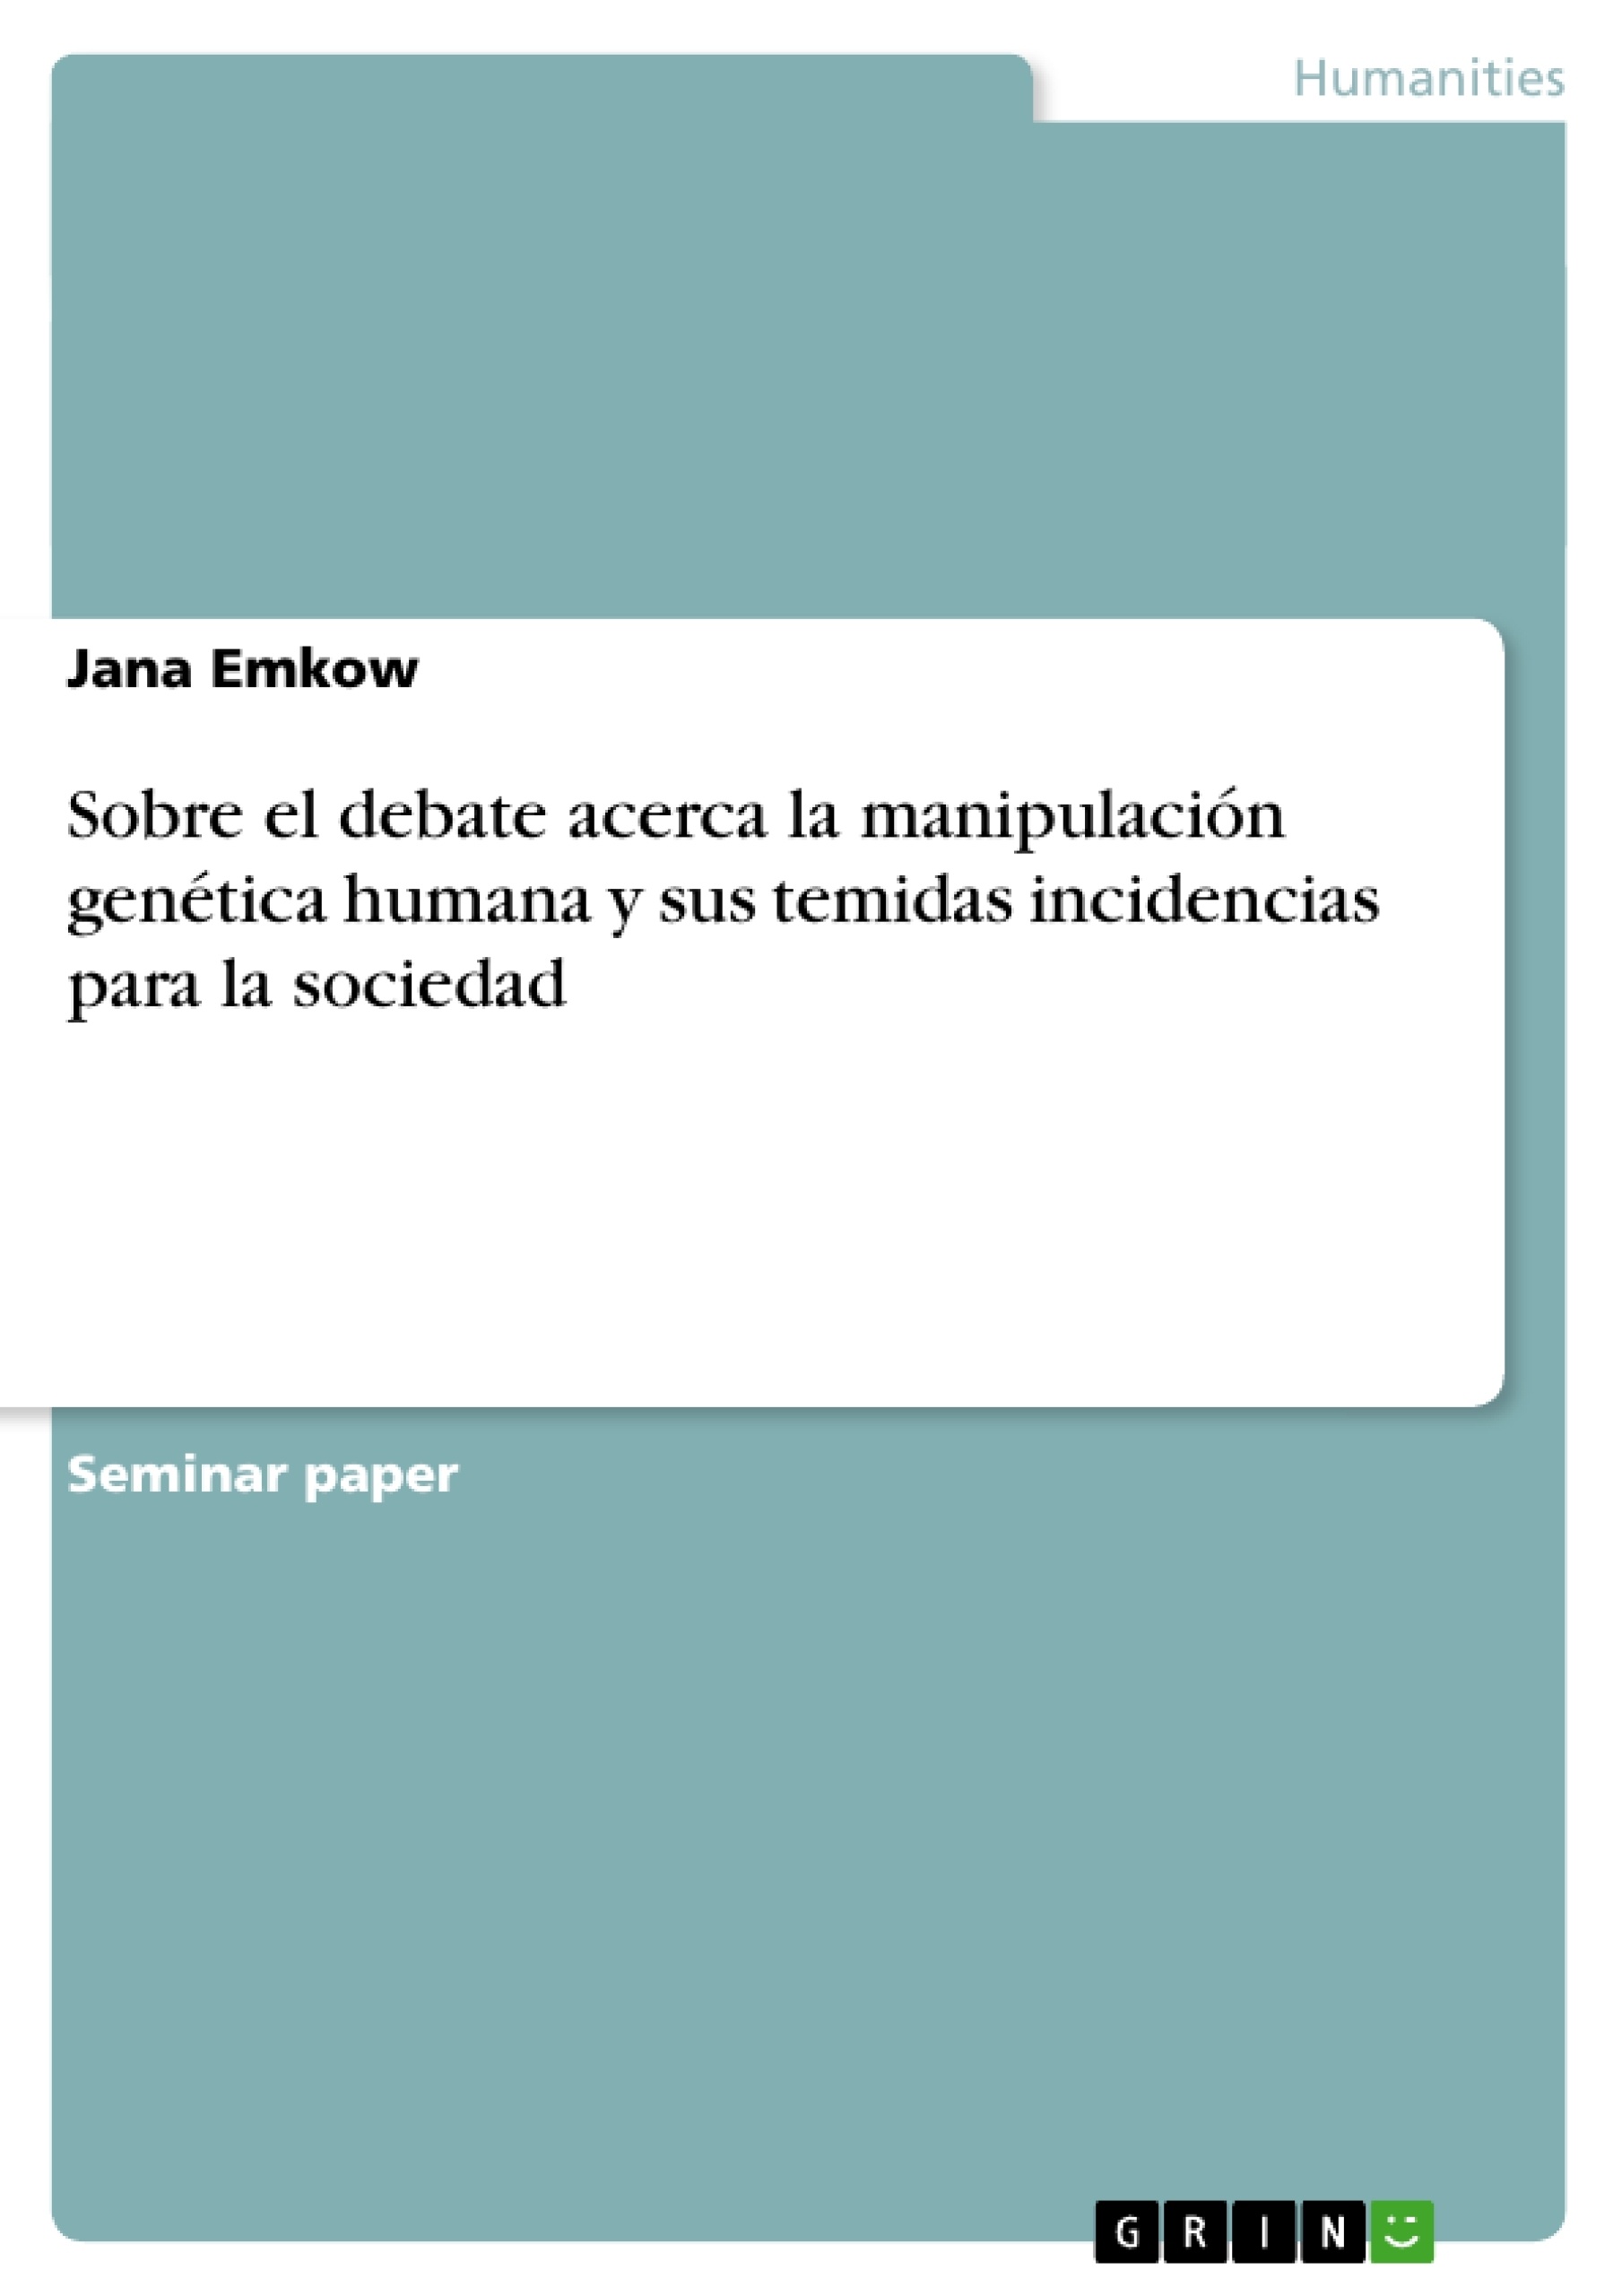 Título: Sobre el debate acerca la manipulación genética humana y sus temidas incidencias para la sociedad